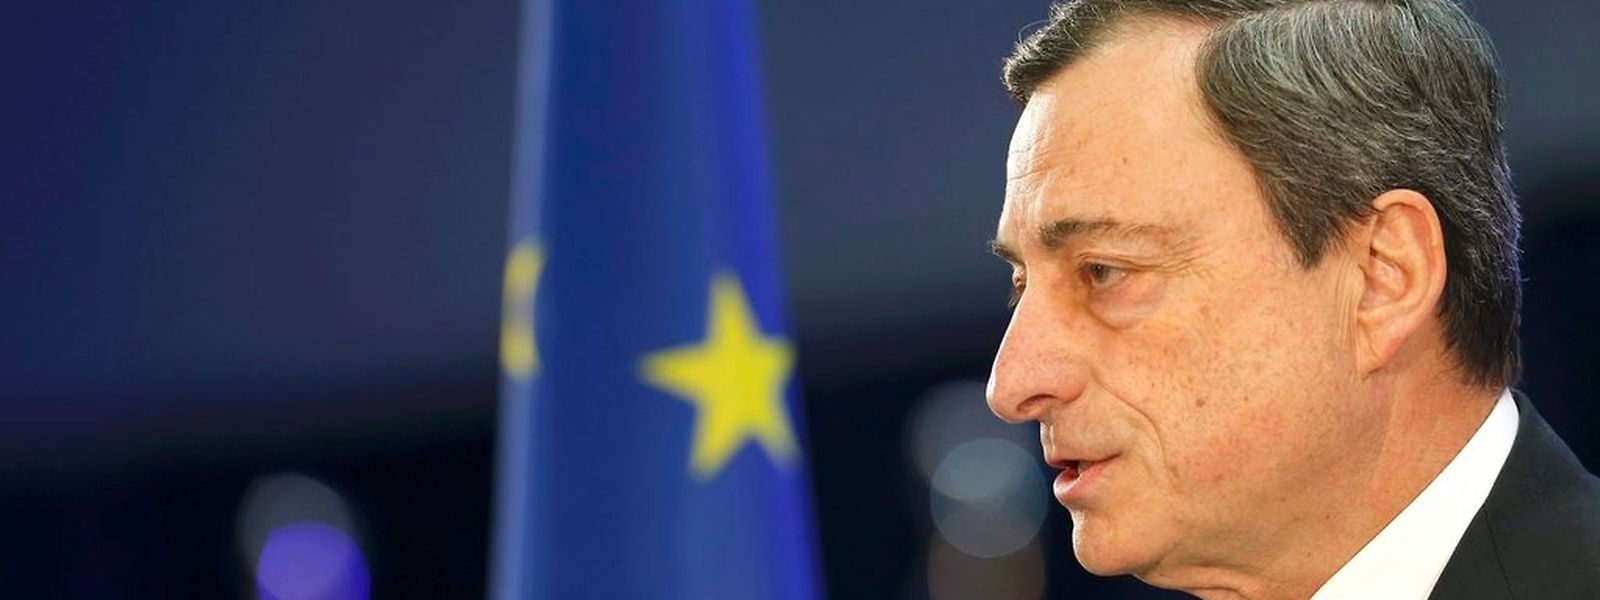 Mario Draghi wird laut Ökonomen zwar Handlungsbereitschaft signalisieren, aber das Anleihekaufprogramm zunächst noch nicht ausweiten. (Foto: Reuters)